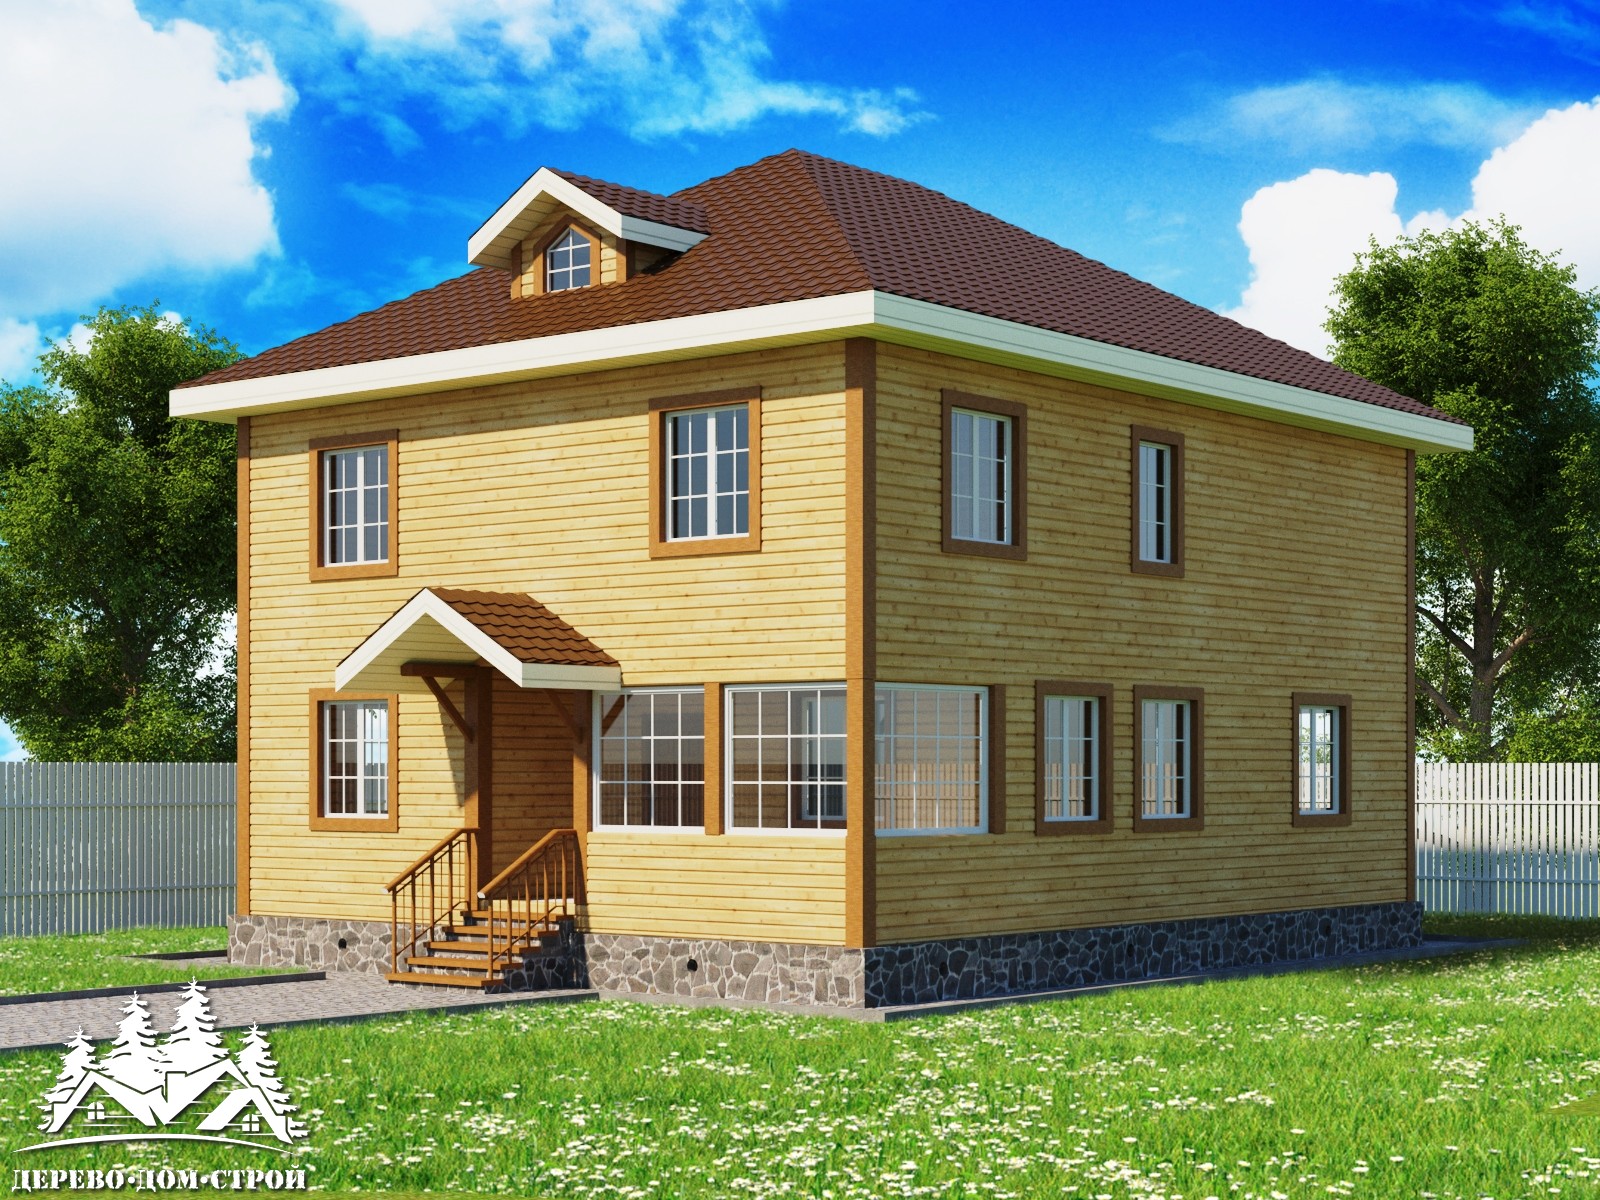 Проект одноэтажного деревянного  дома с мансардой и верандой  из бруса – ДБС 389